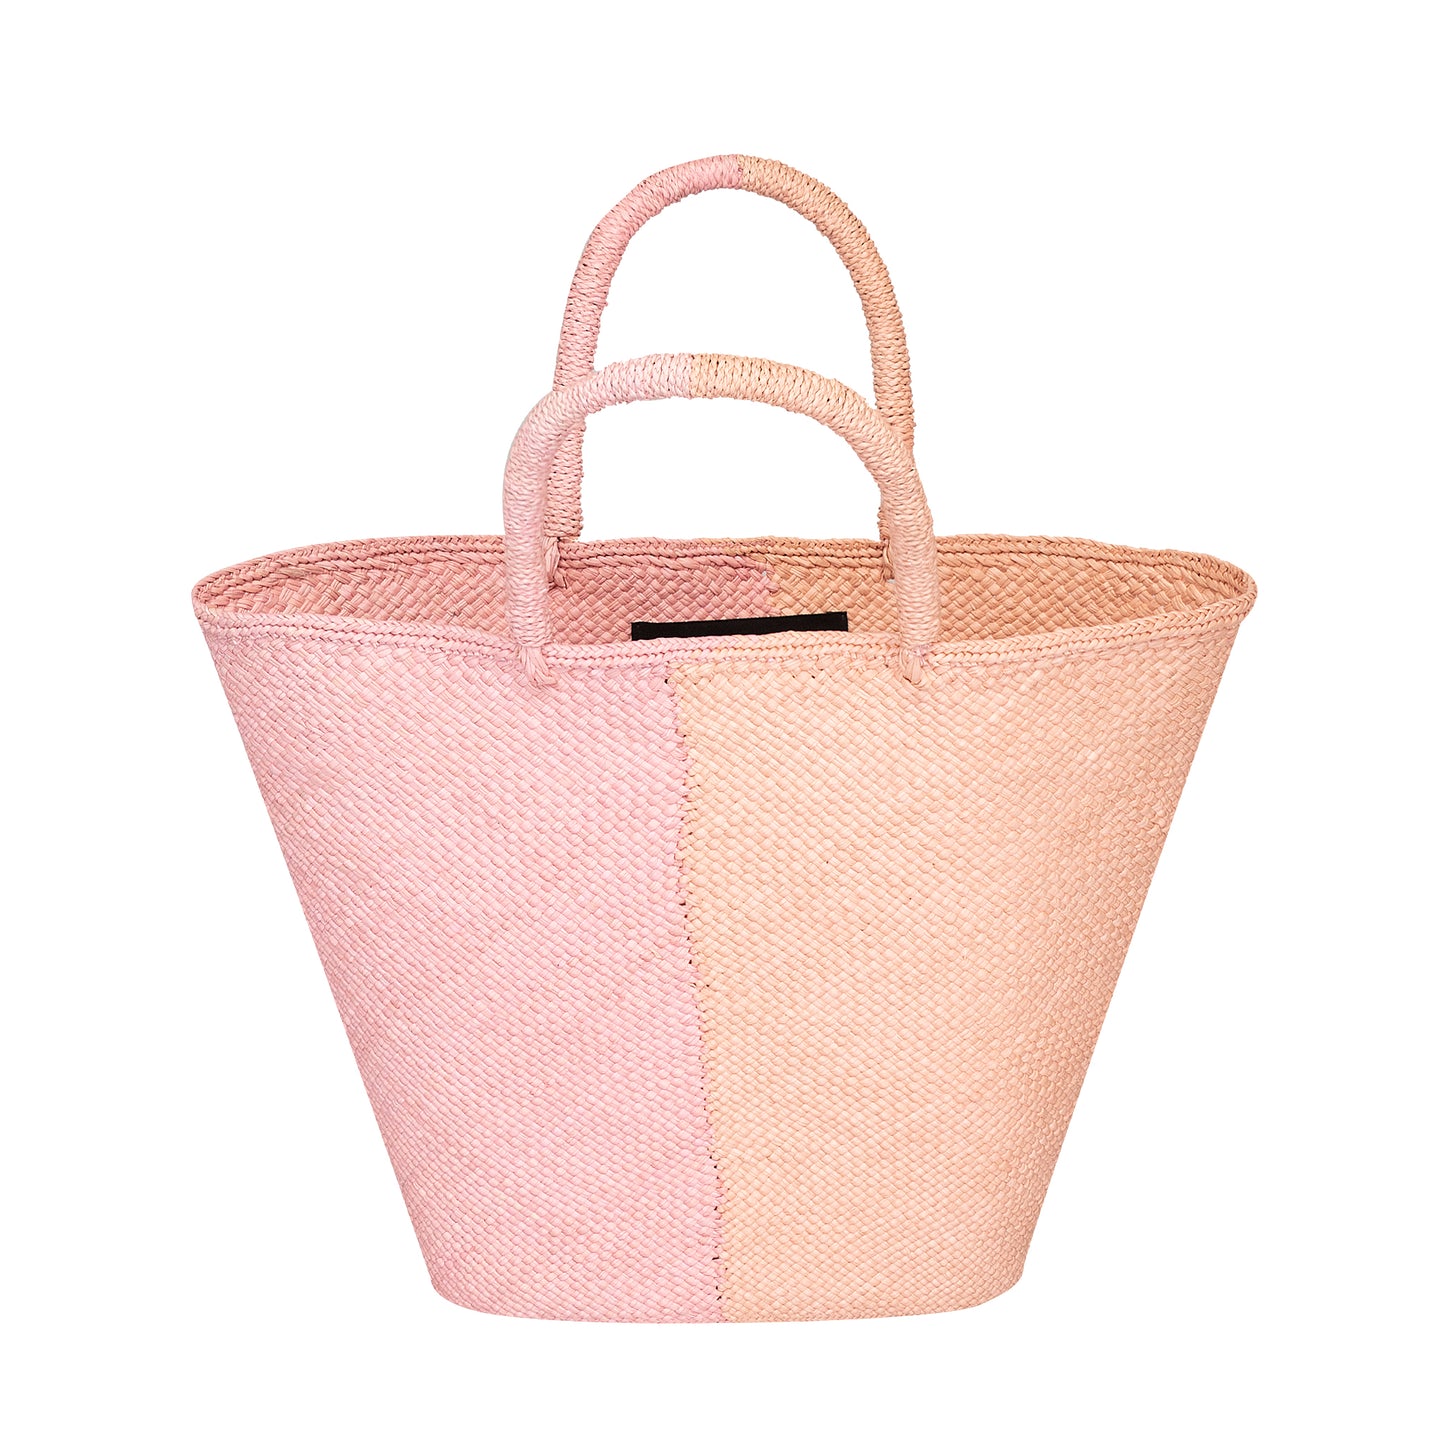 Capri Small Straw Two-Tone Tote Small Bag Pink & Coral